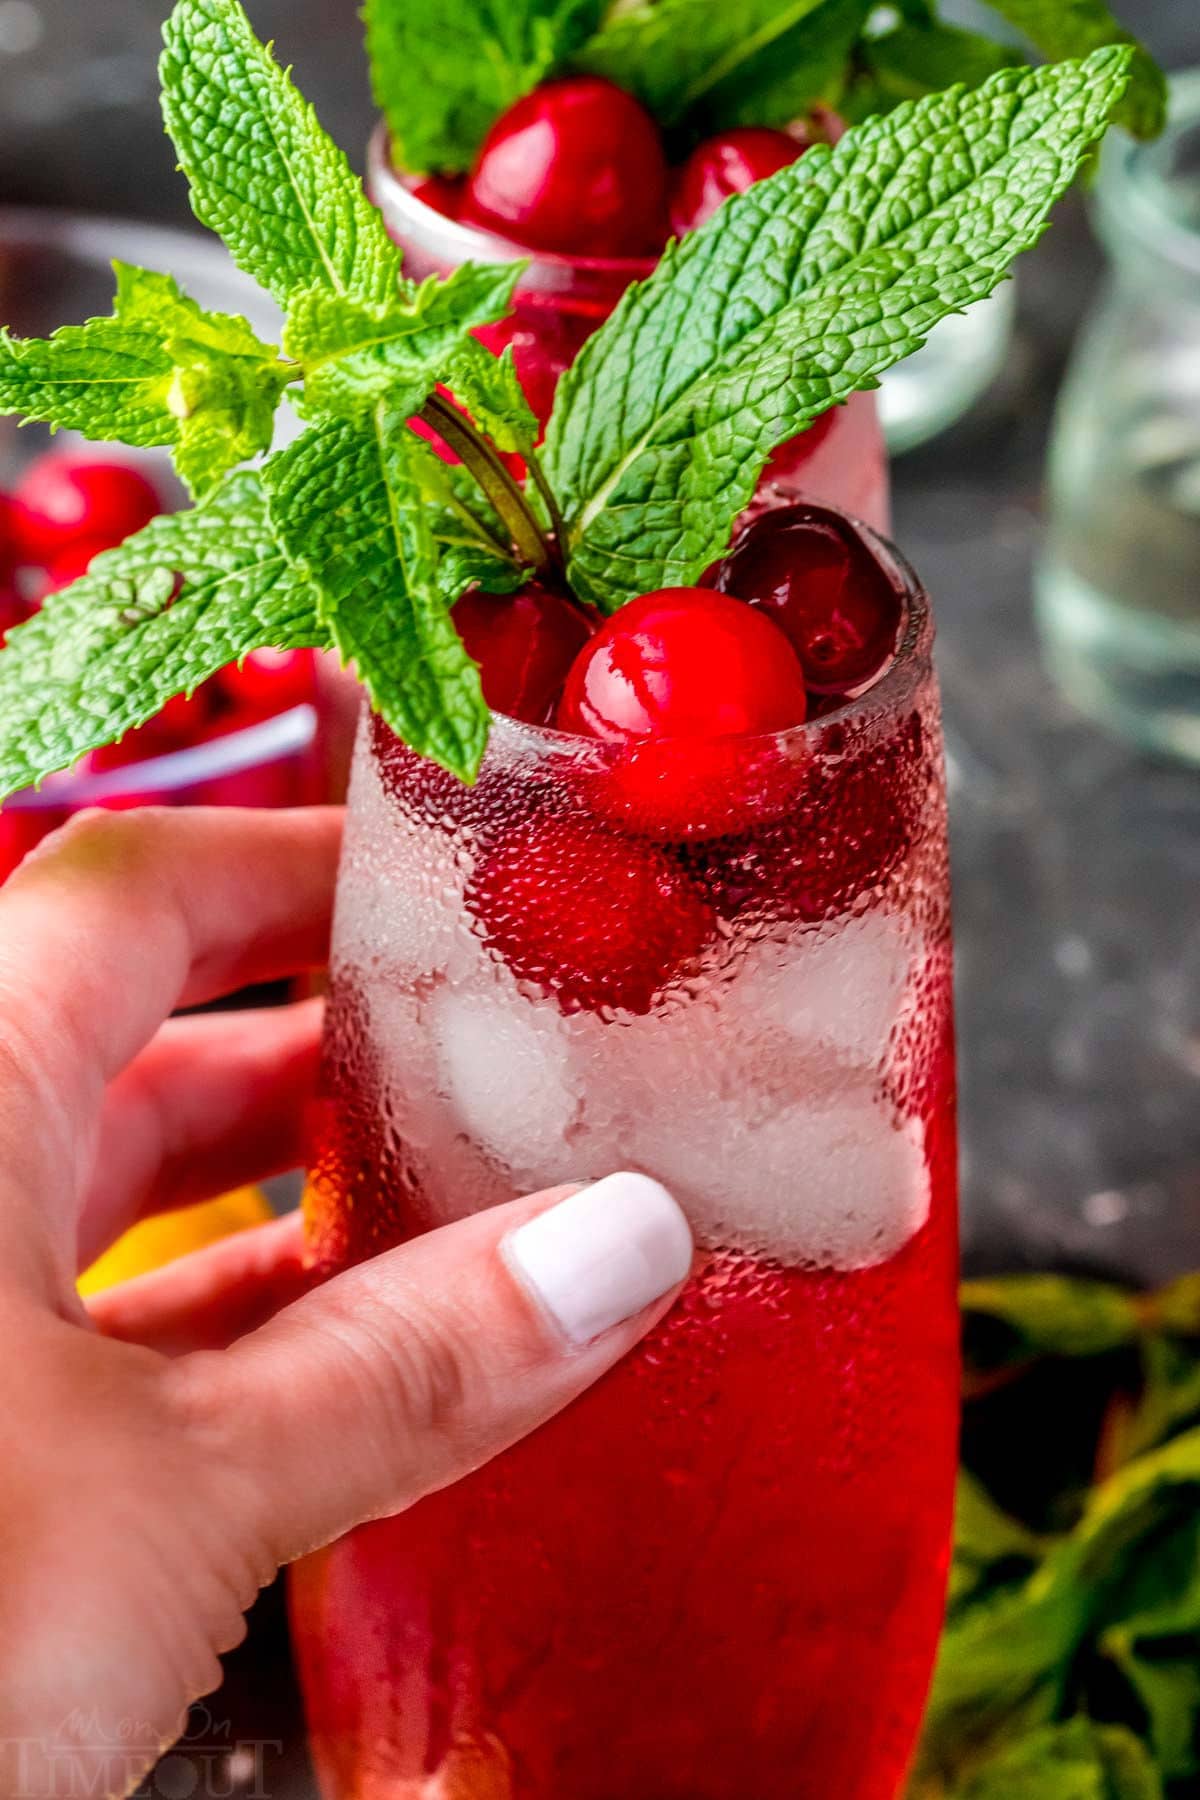 mano che tiene un cocktail di mirtilli rossi con sopra un rametto di menta fresca.